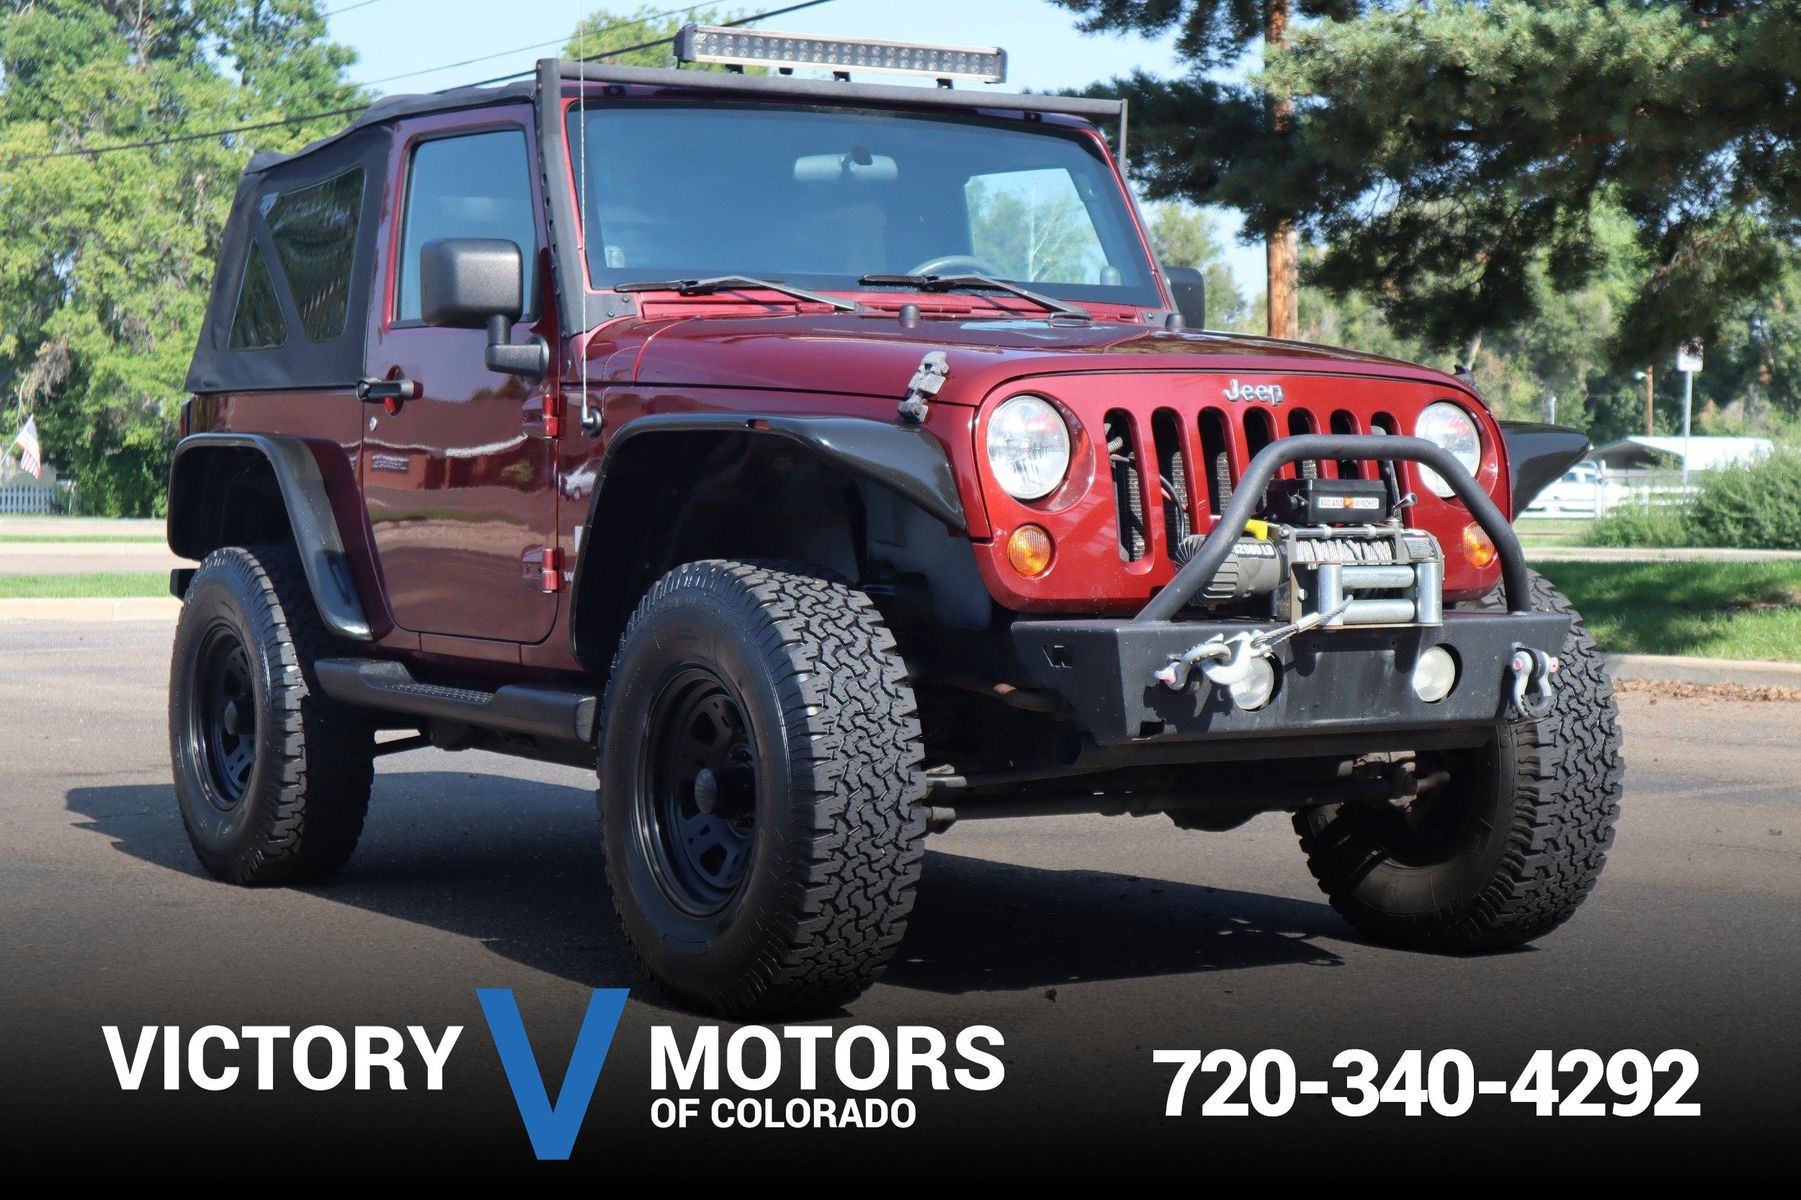 2008 Jeep Wrangler X | Victory Motors of Colorado